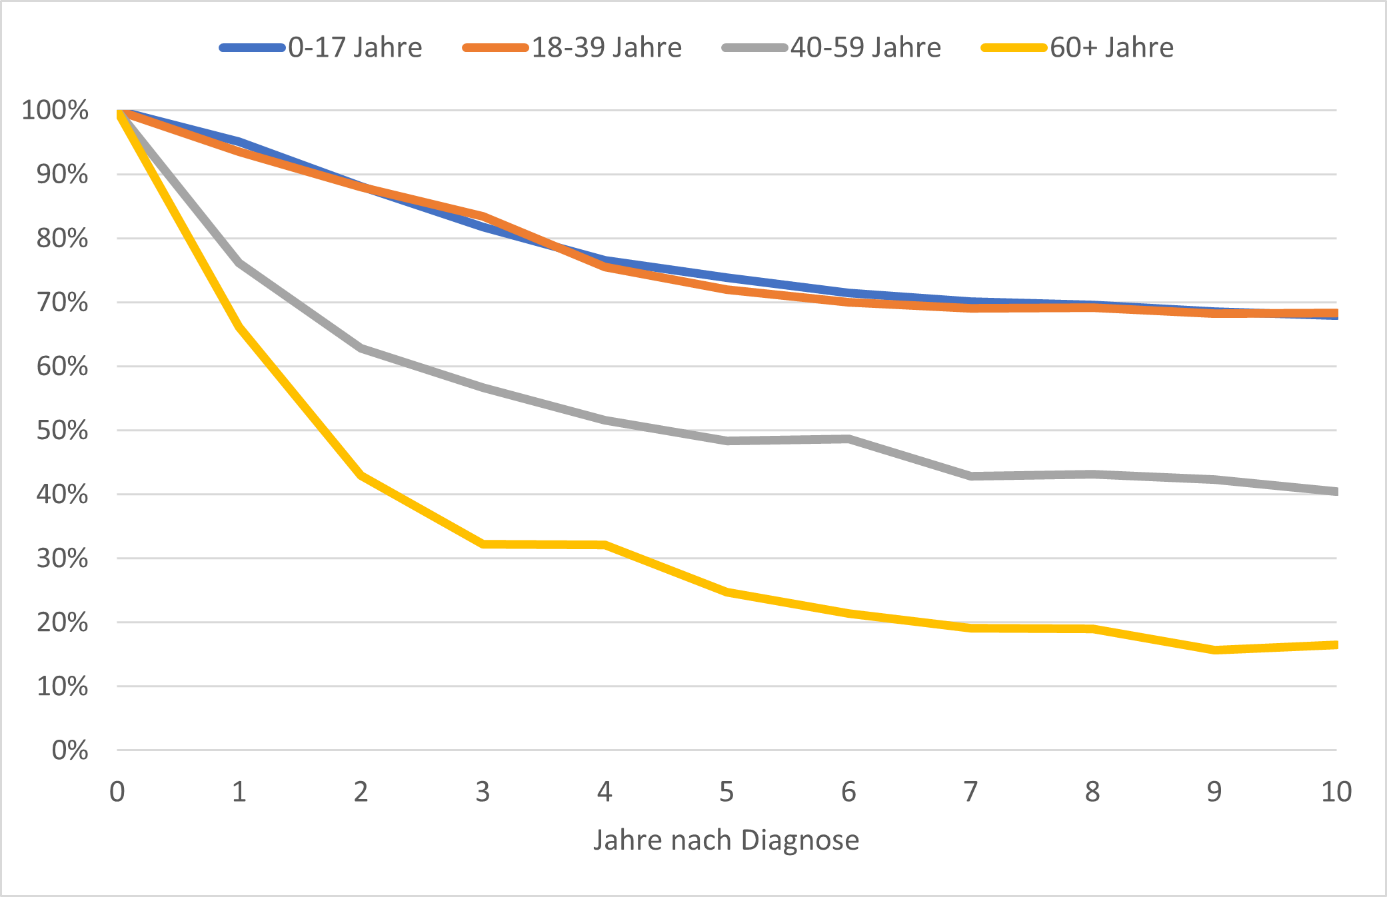 Relative Überlebensraten nach Diagnose eines Osteosarkoms in Deutschland, nach Altersgruppe, Periode 2015-2019*